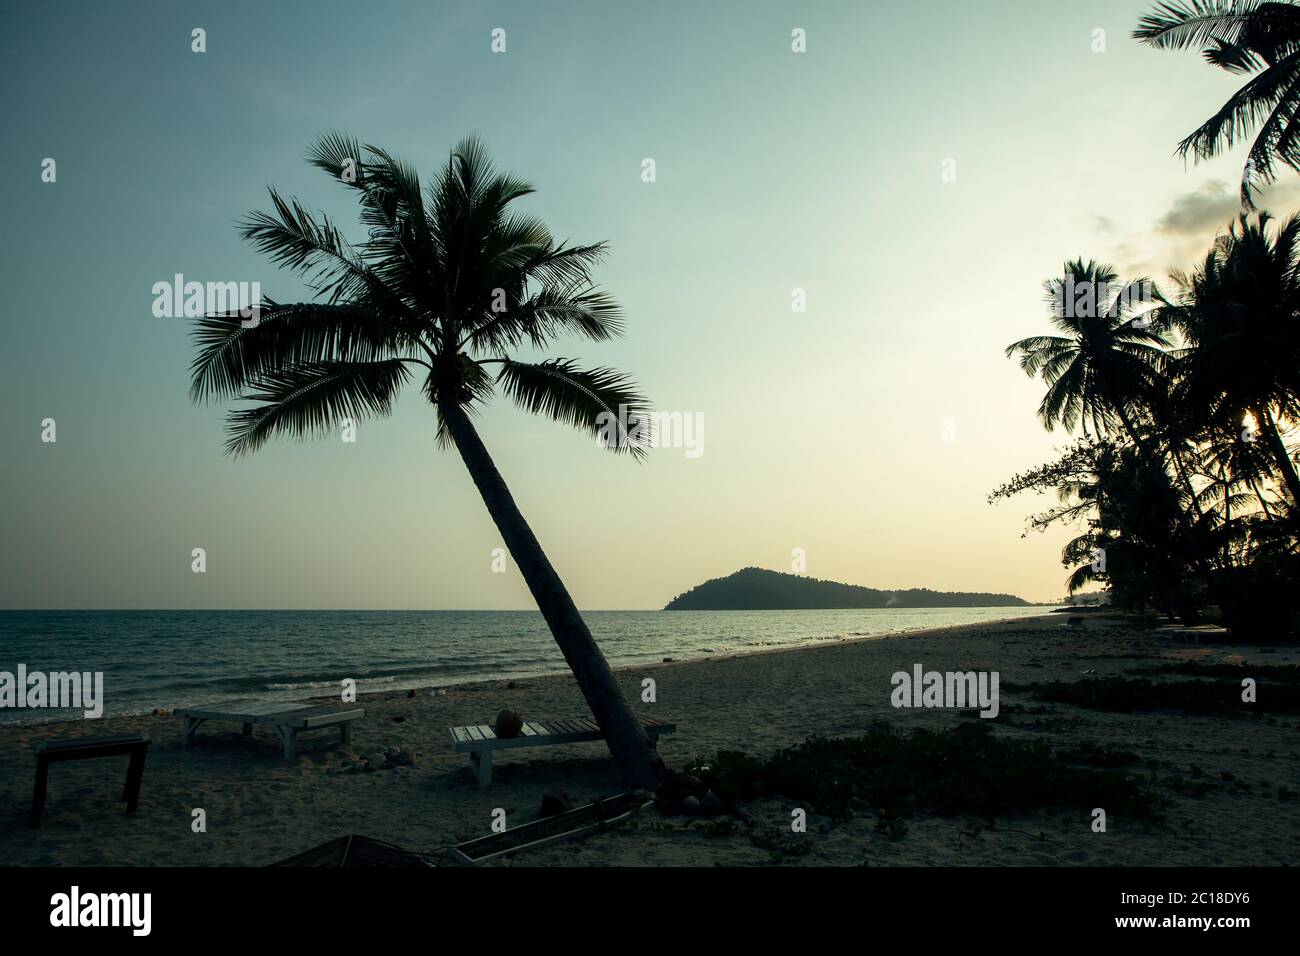 Silhouettes de palmiers sur une plage tropicale au beau crépuscule. Banque D'Images